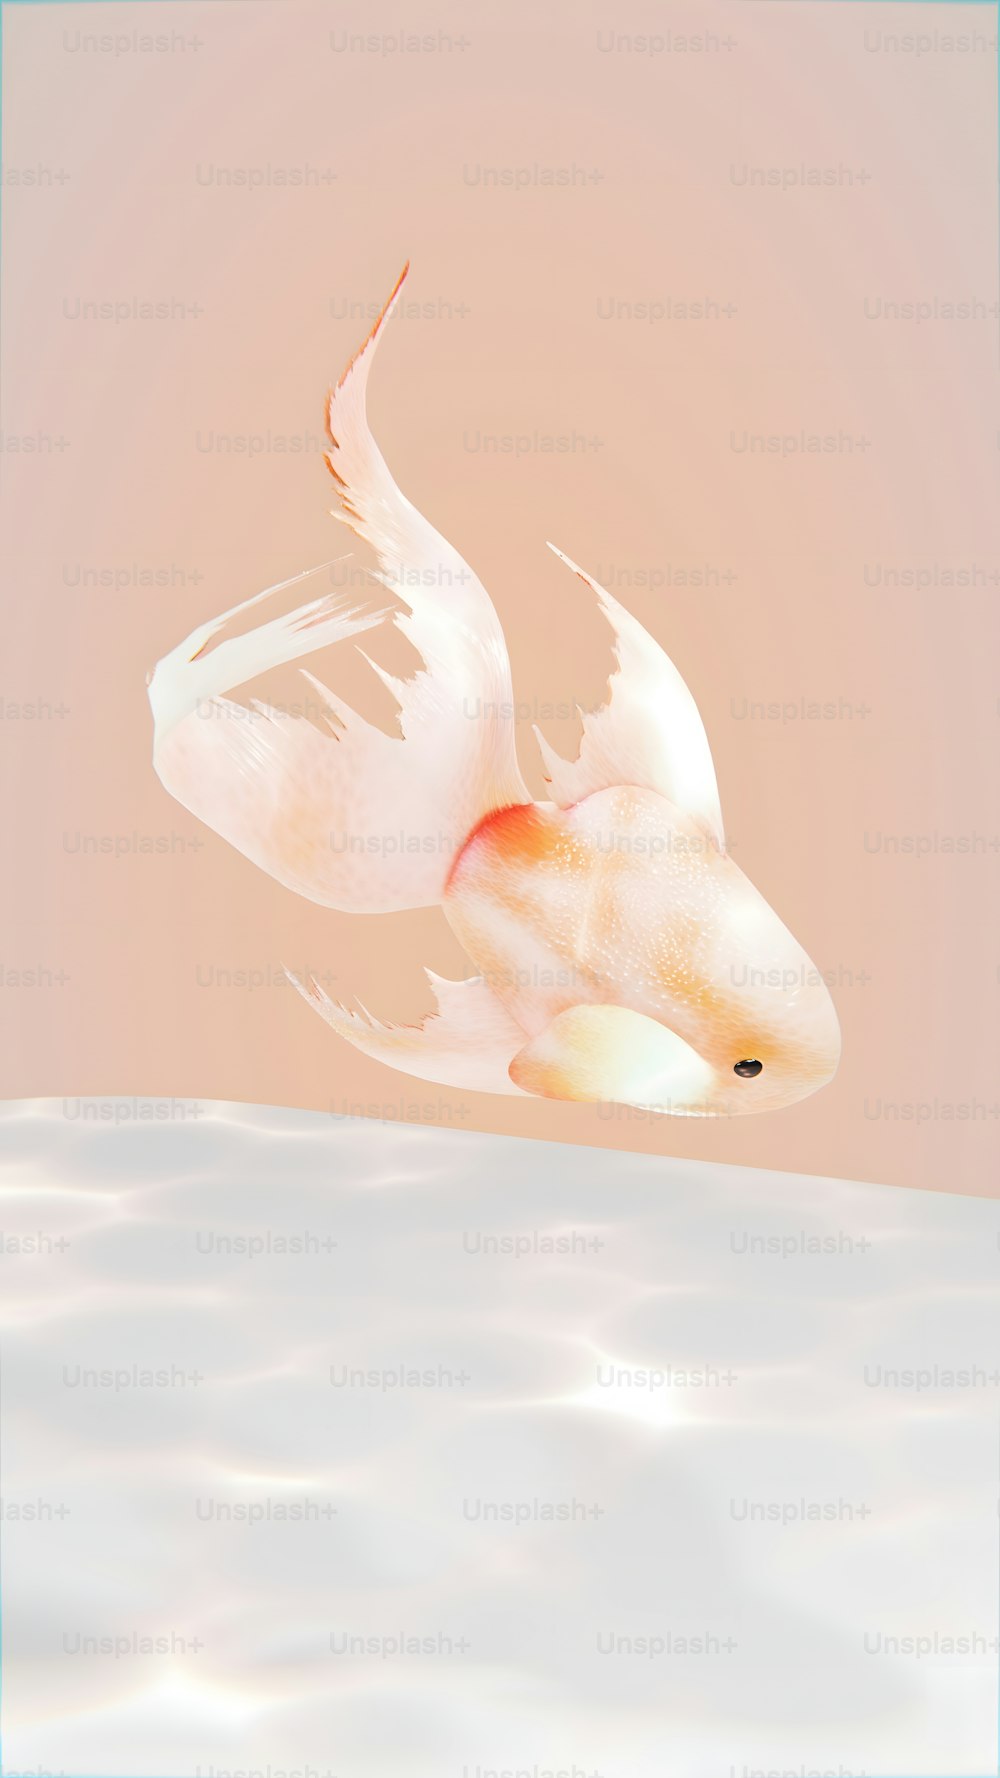 Un pesce rosso con ali bianche che galleggiano nell'acqua